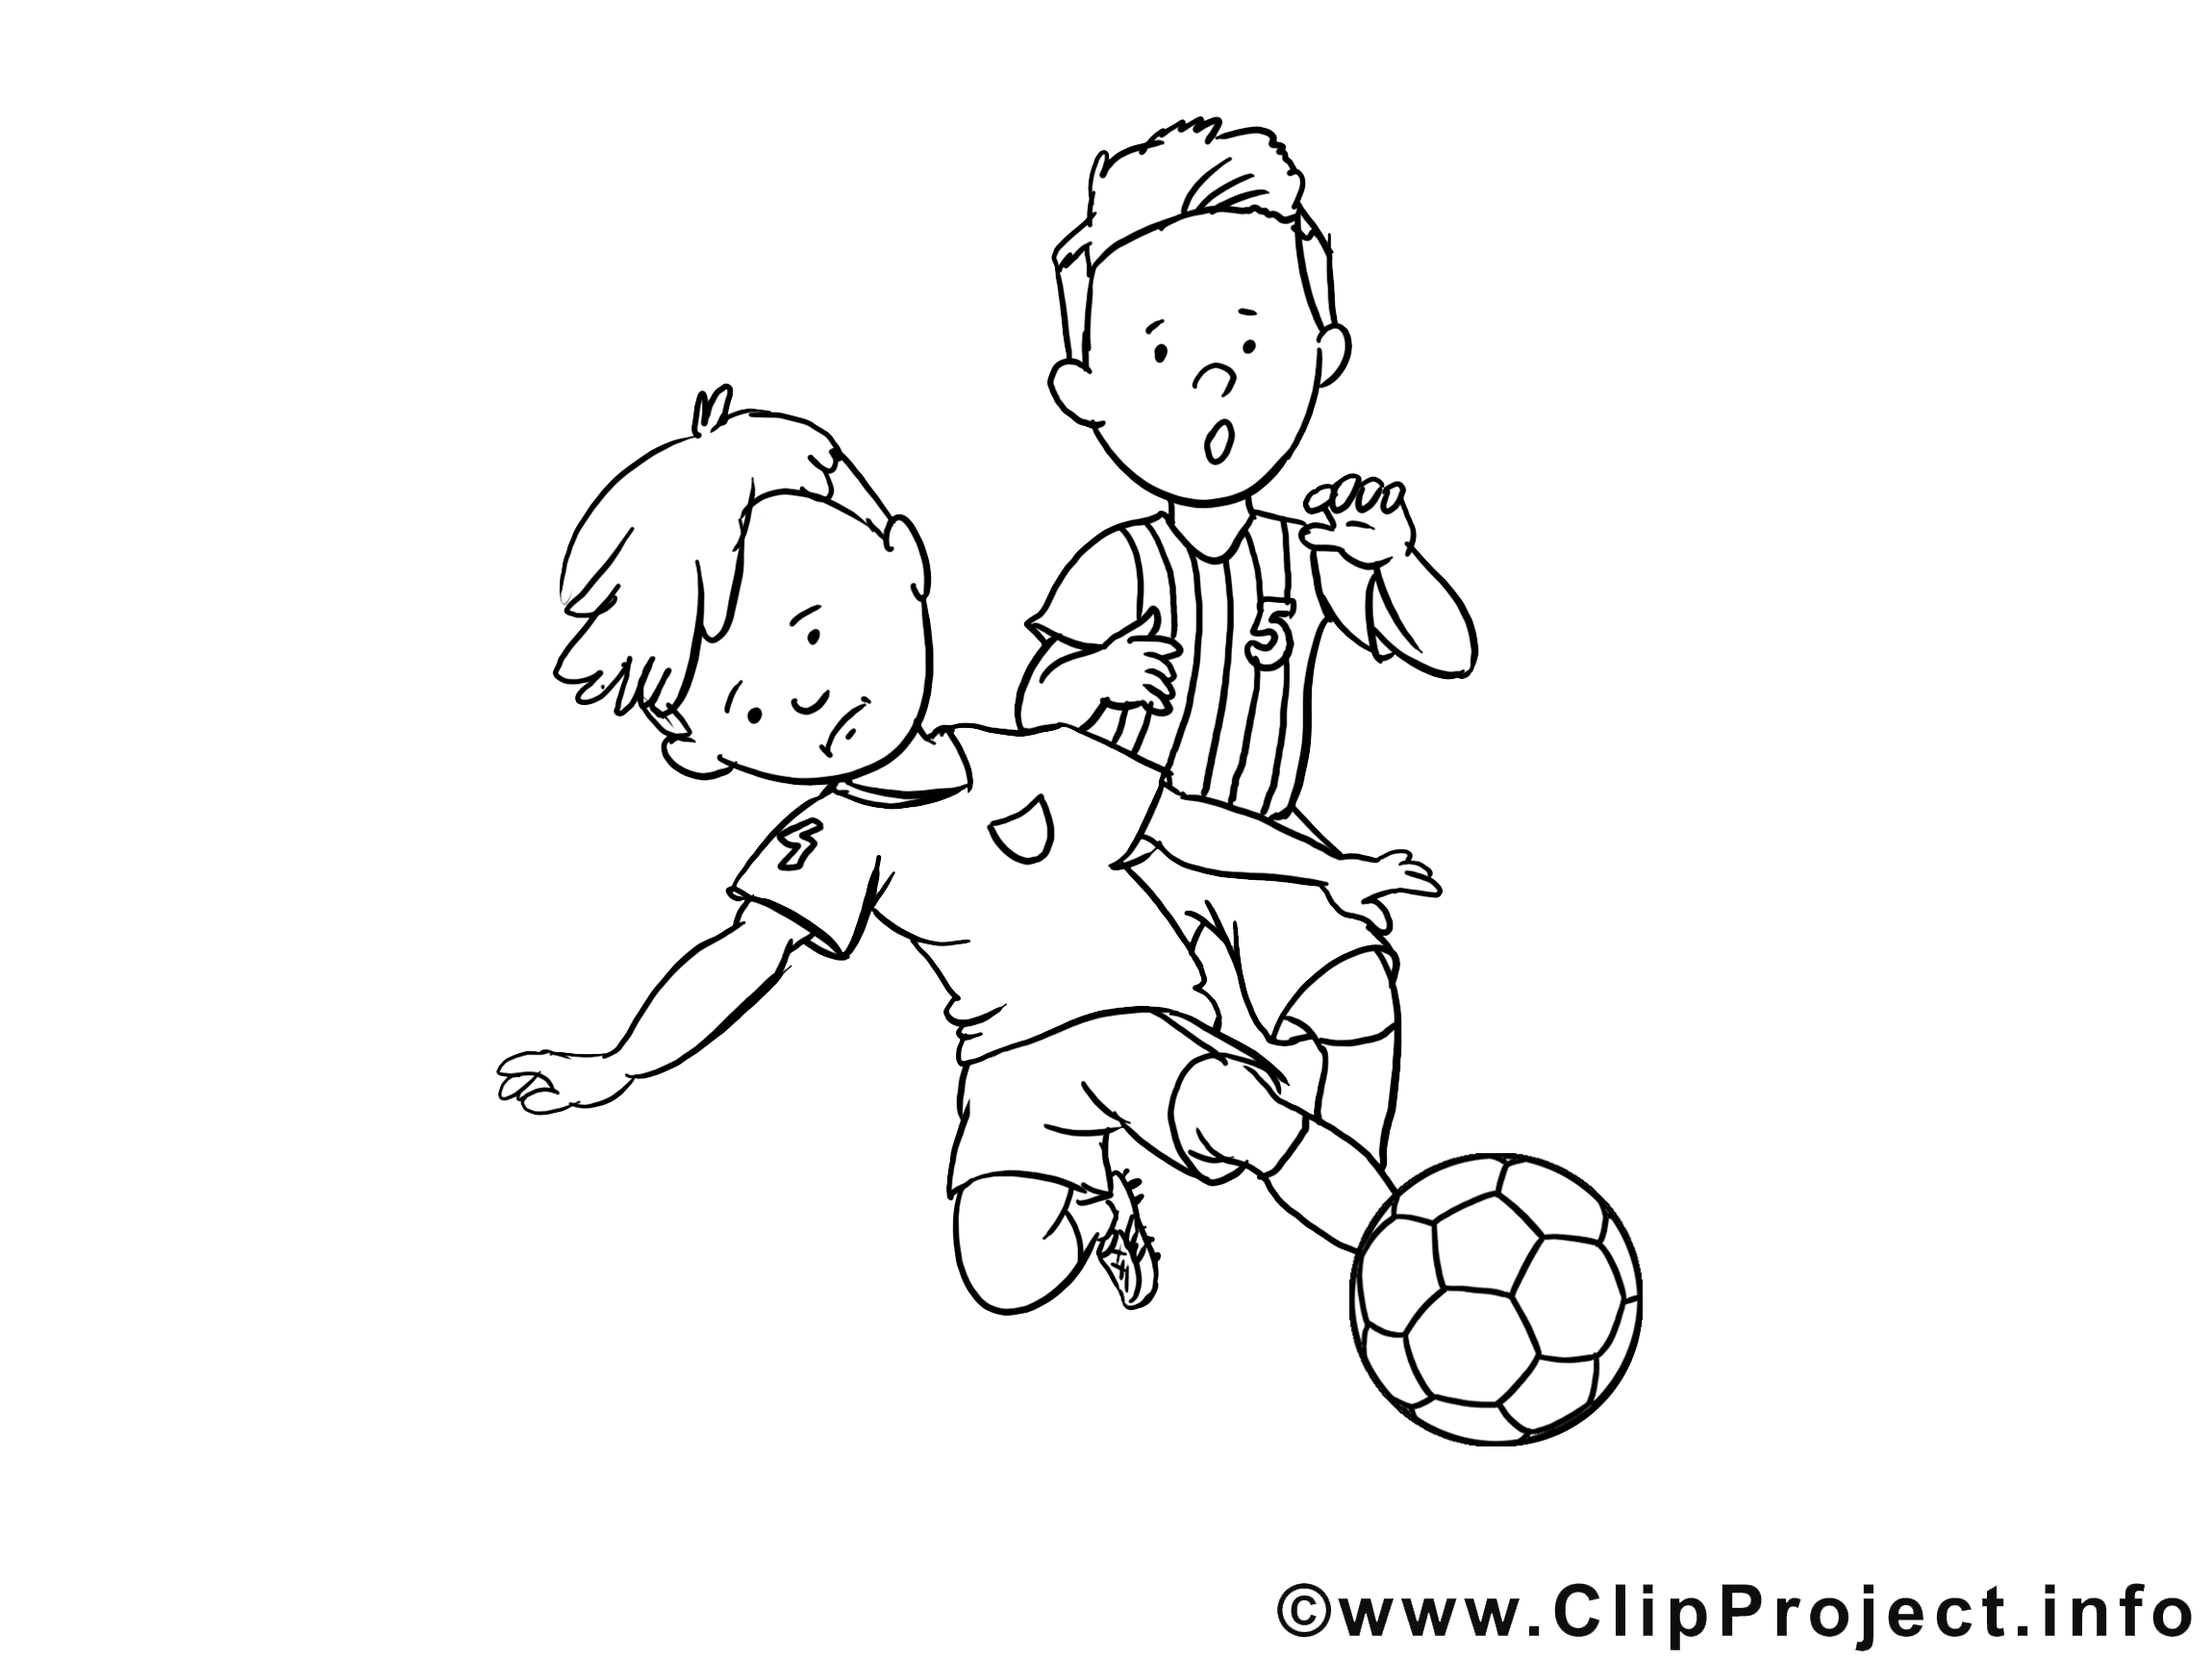 Tacle Glisse Clip Art Gratuit Football A Imprimer Football Coloriages Dessin Picture Image Graphic Clip Art Telecharger Gratuit